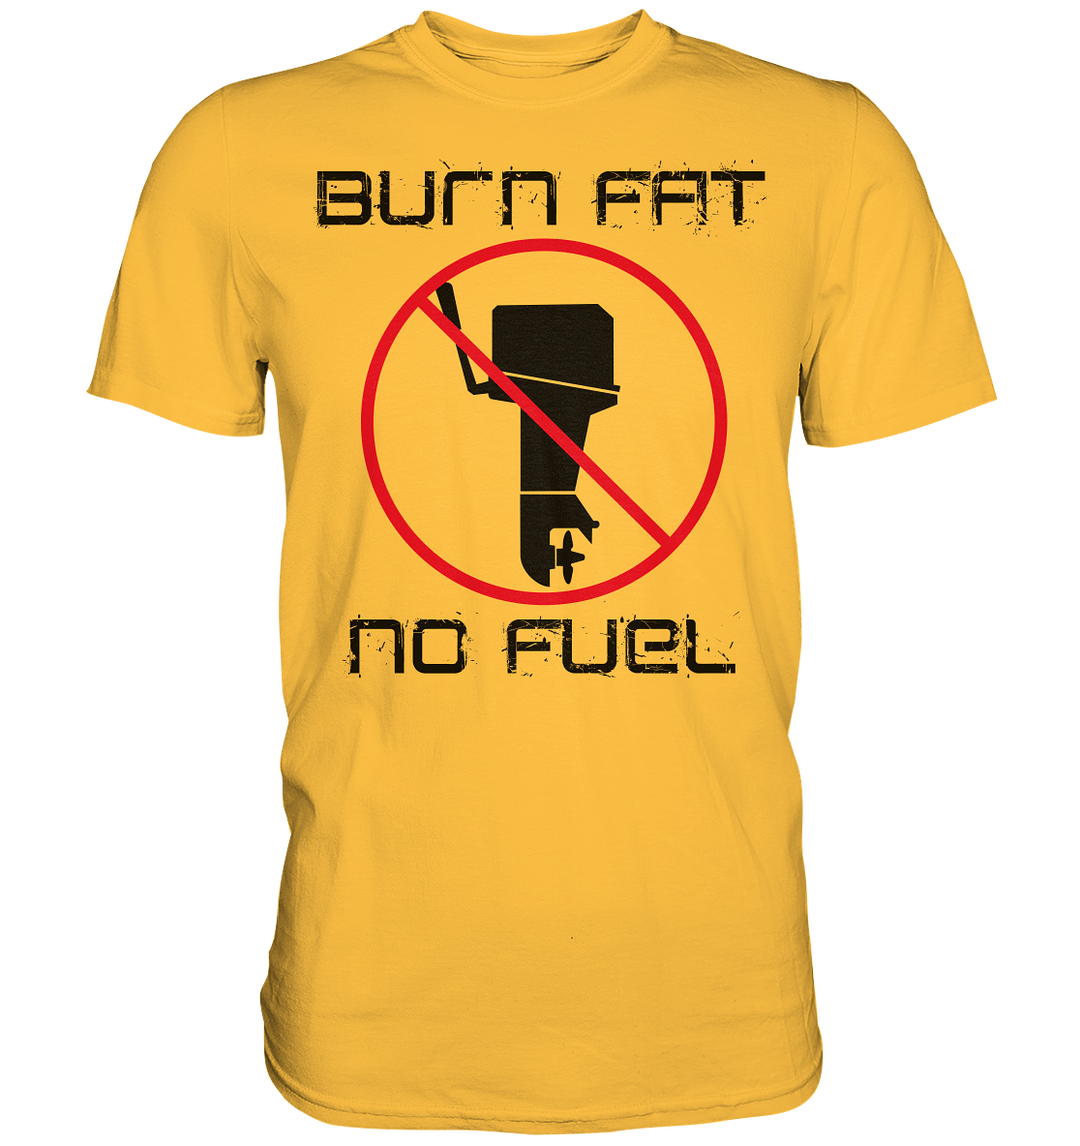 Burn Fat - No Fuel, Boys Premium T-Shirt